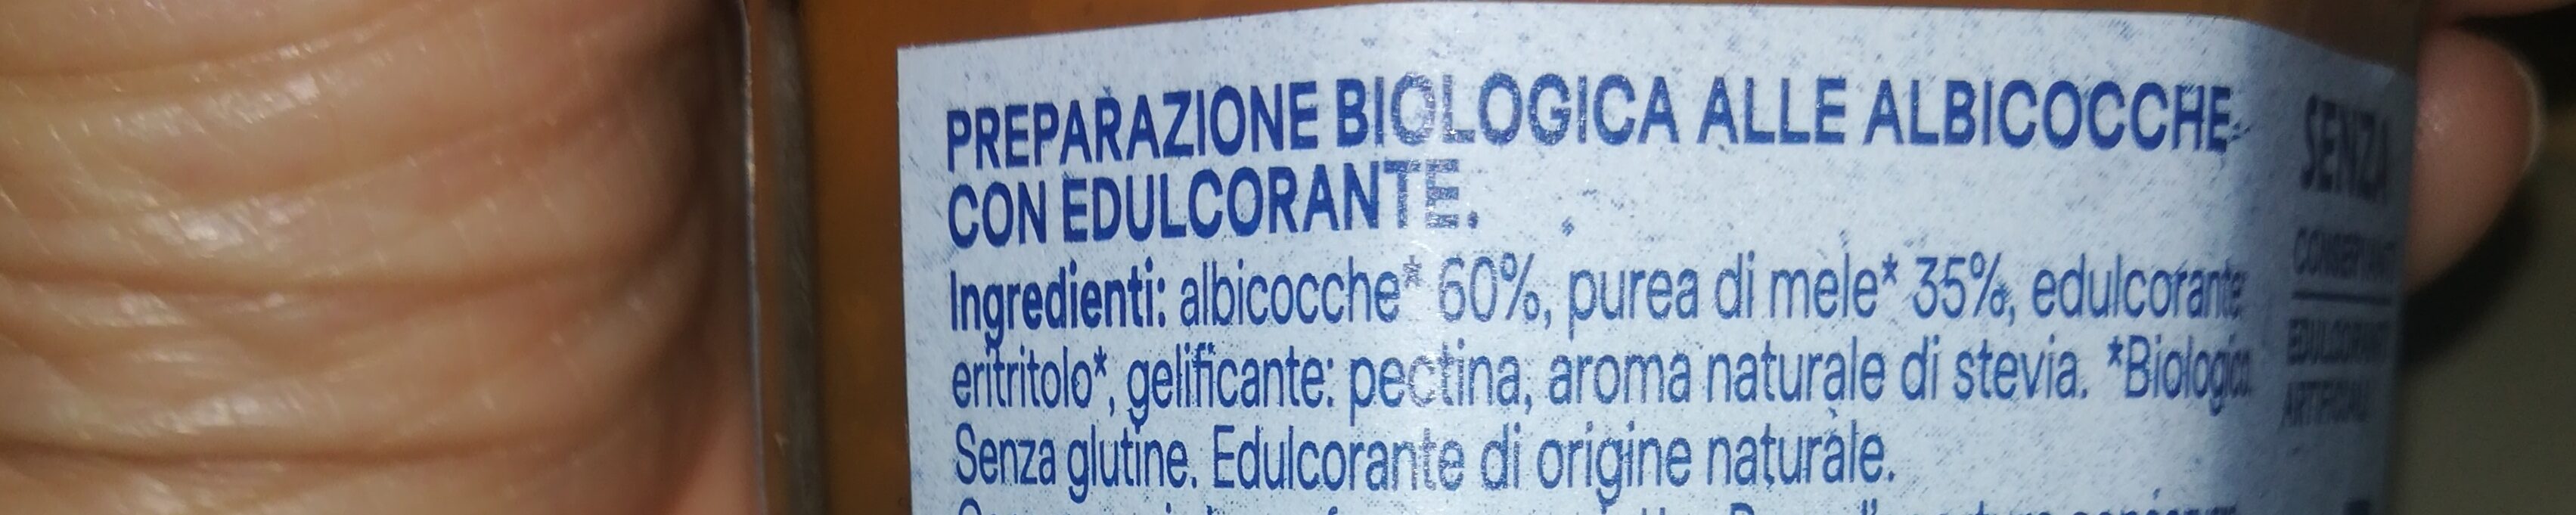 Marmellata albicocca - Ingredienti